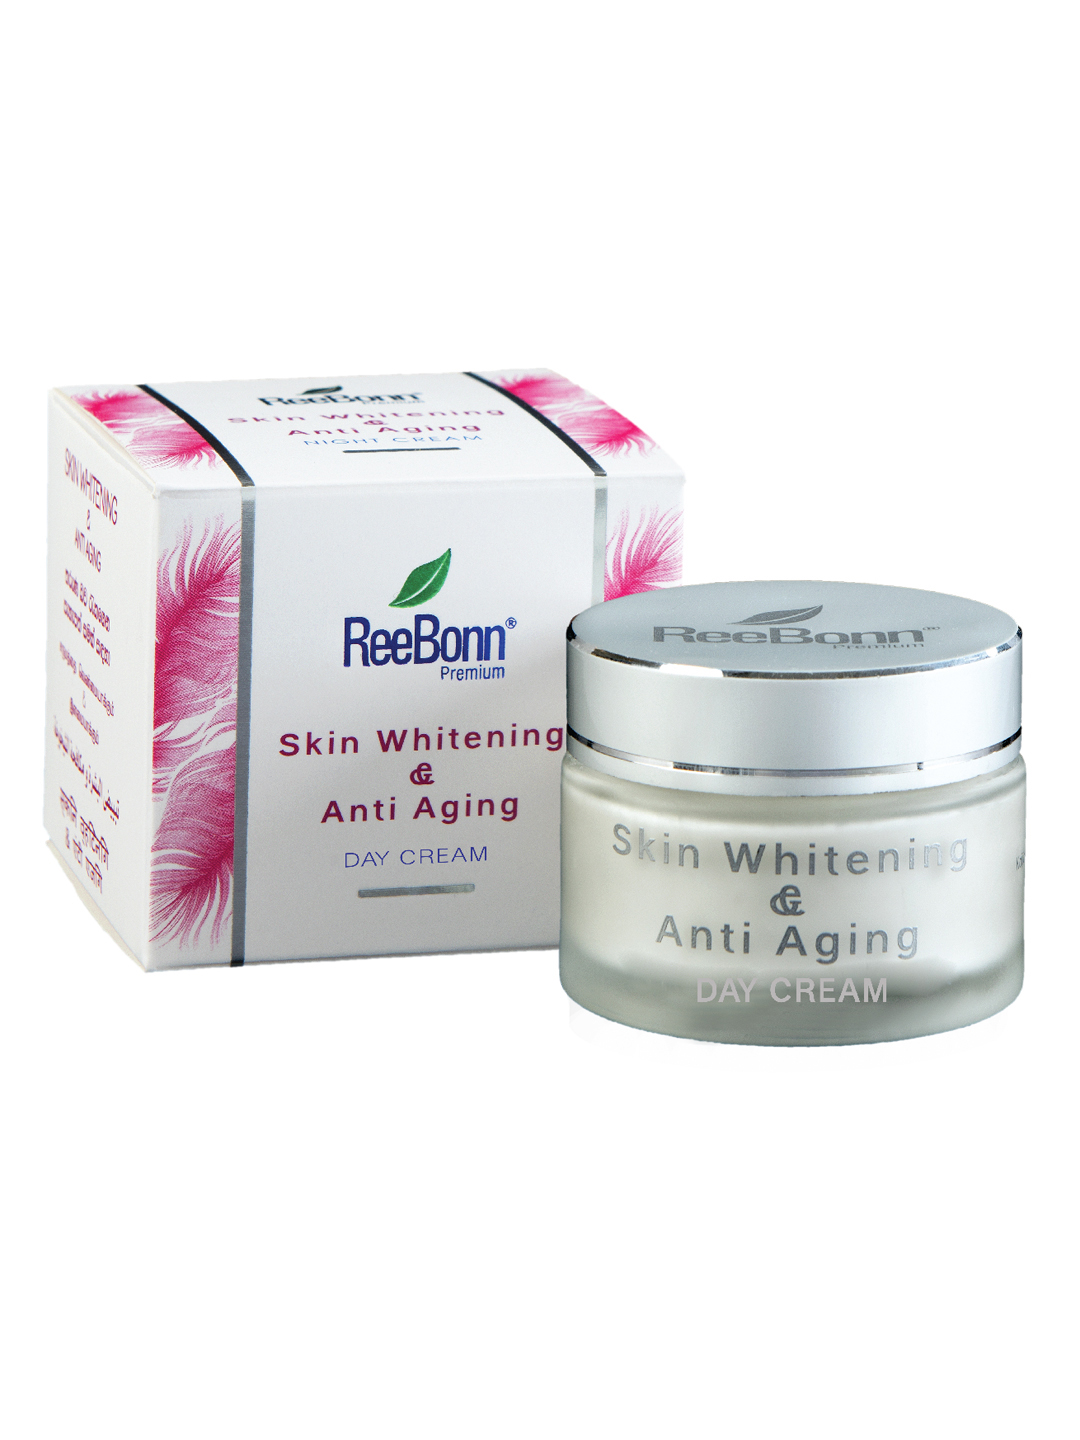 Skin Whitening and Anti-Aging Day Cream - 50g